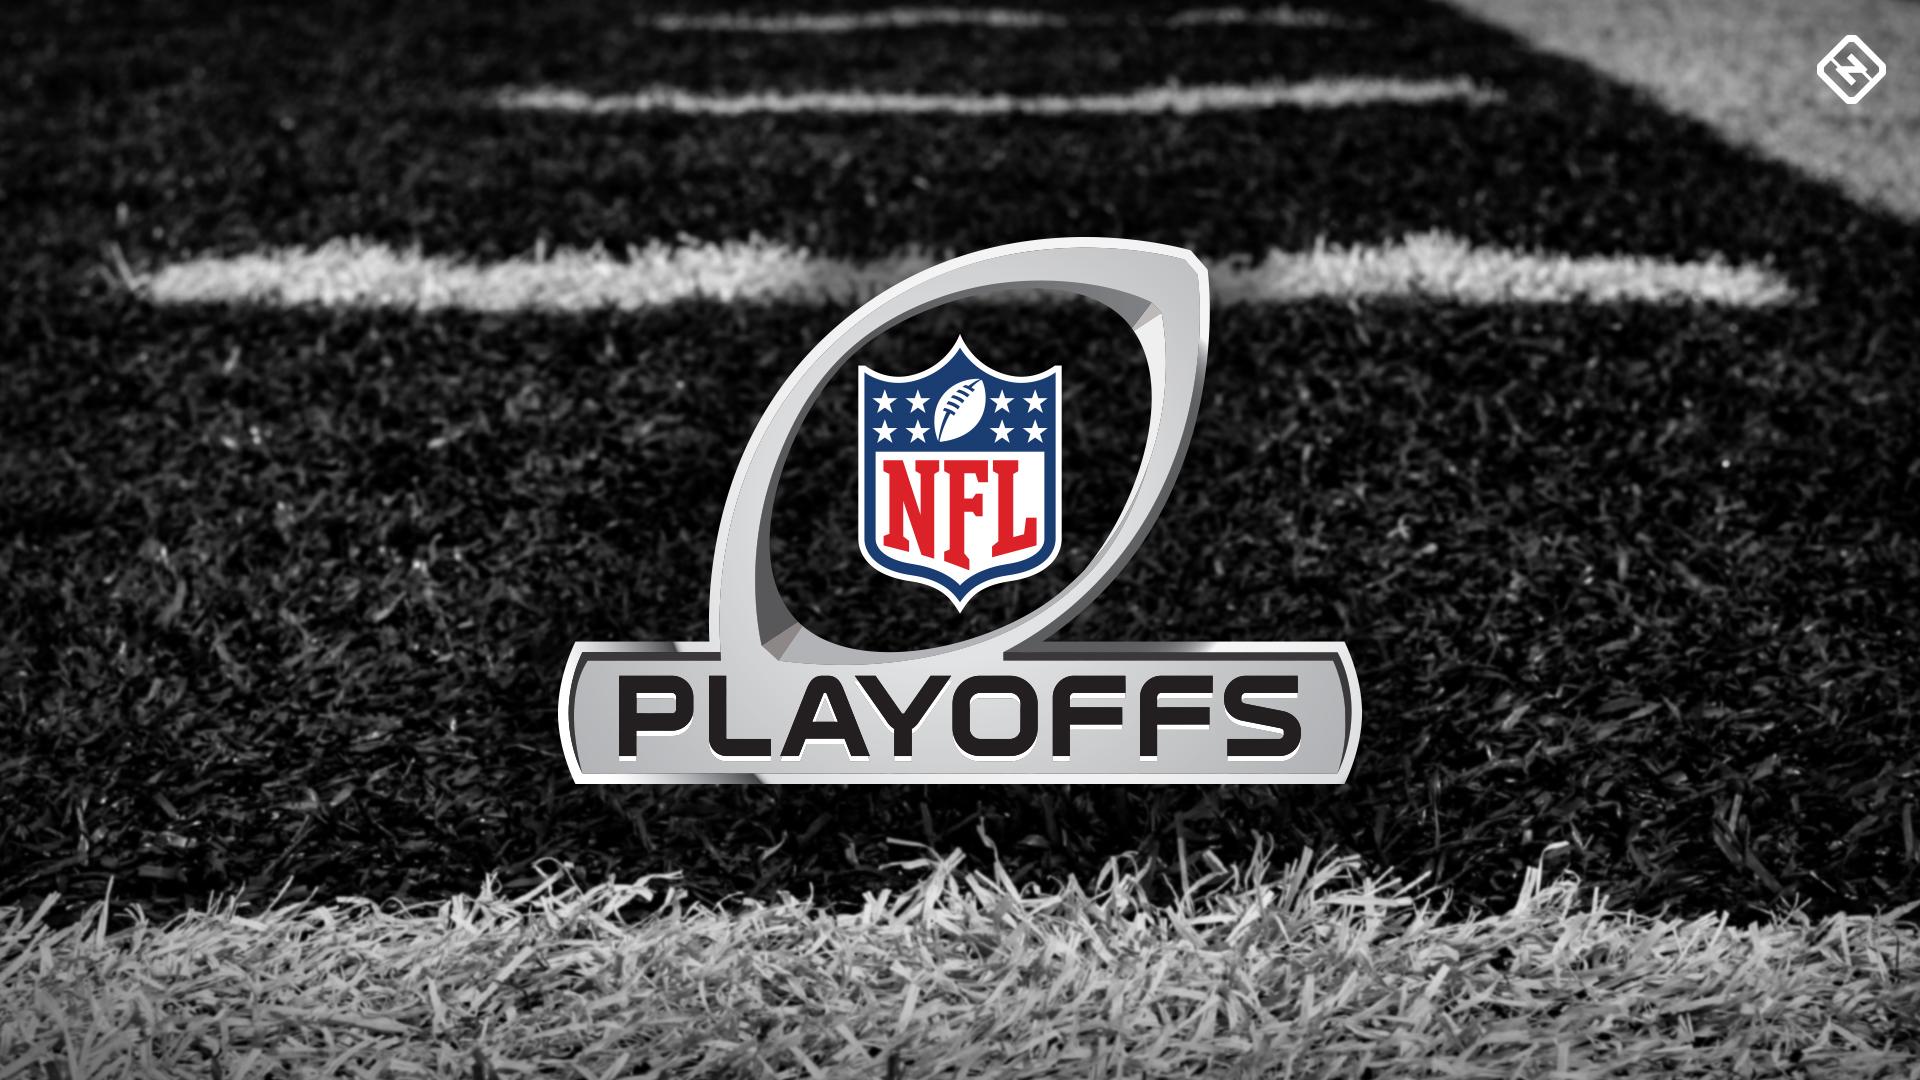 NFL playoff bracket 2020: Full schedule, TV channels, scores